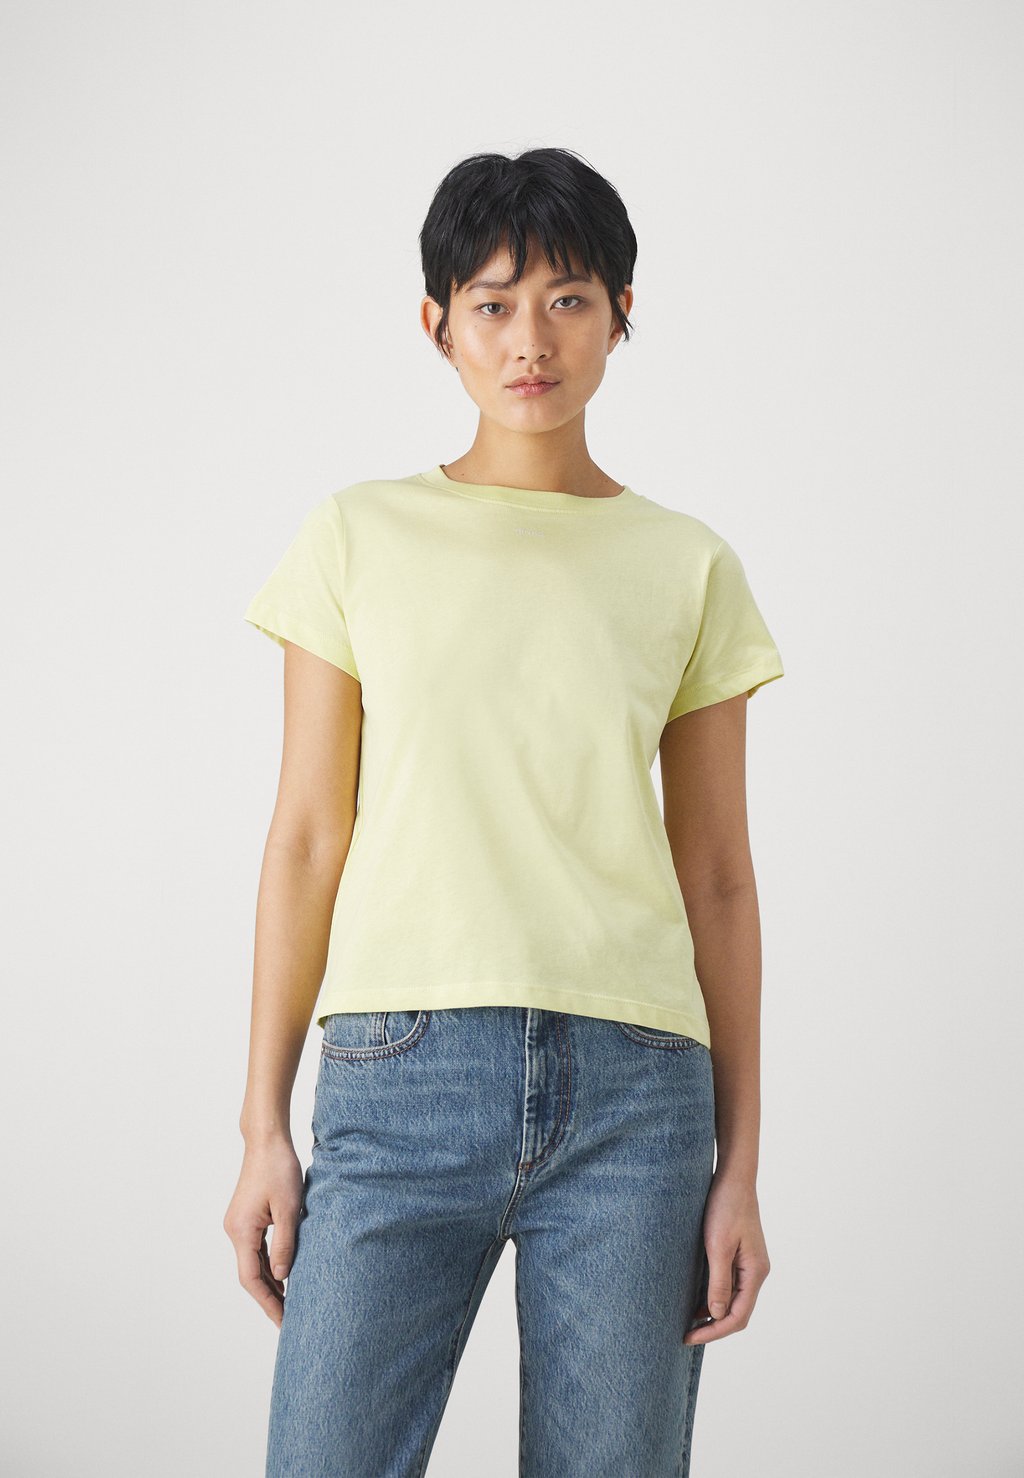 Базовая футболка Basico Pinko, желтый